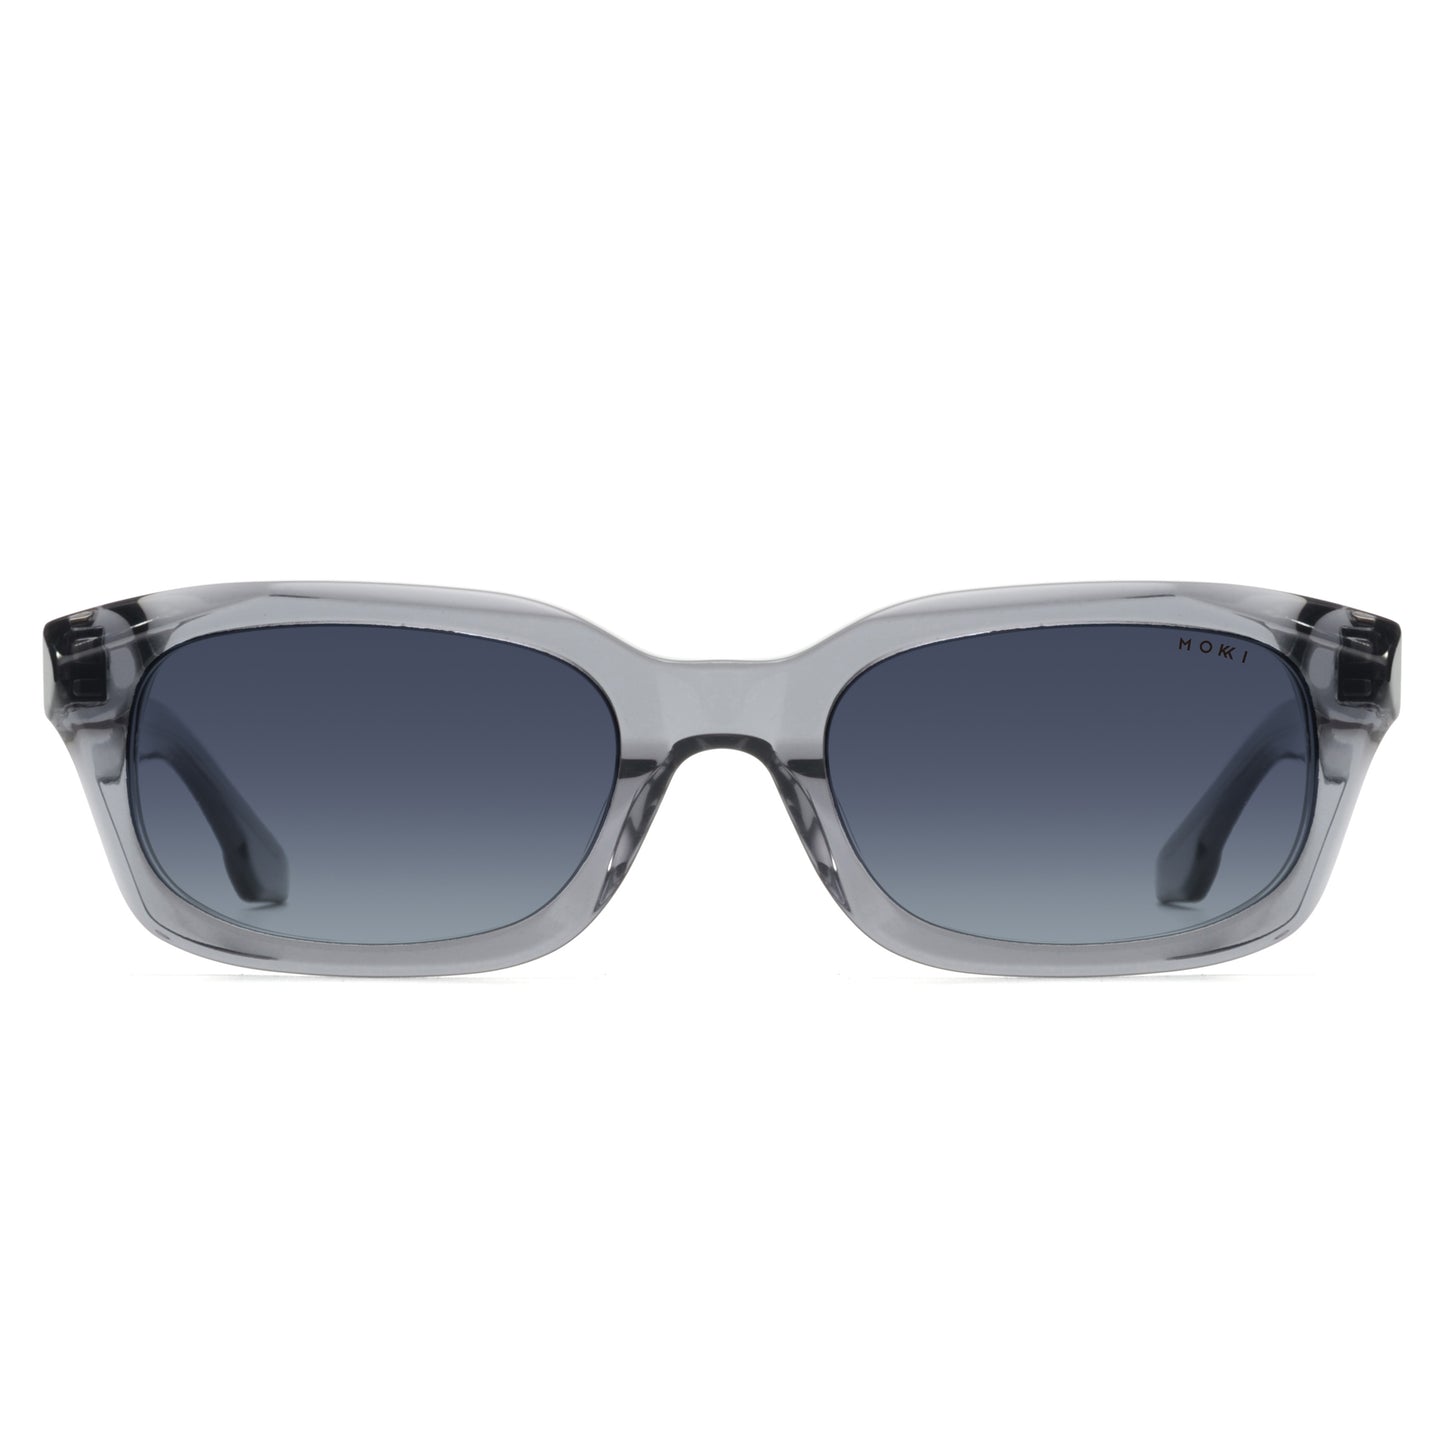 Mokki Slim Ovals sunglasses in transparent